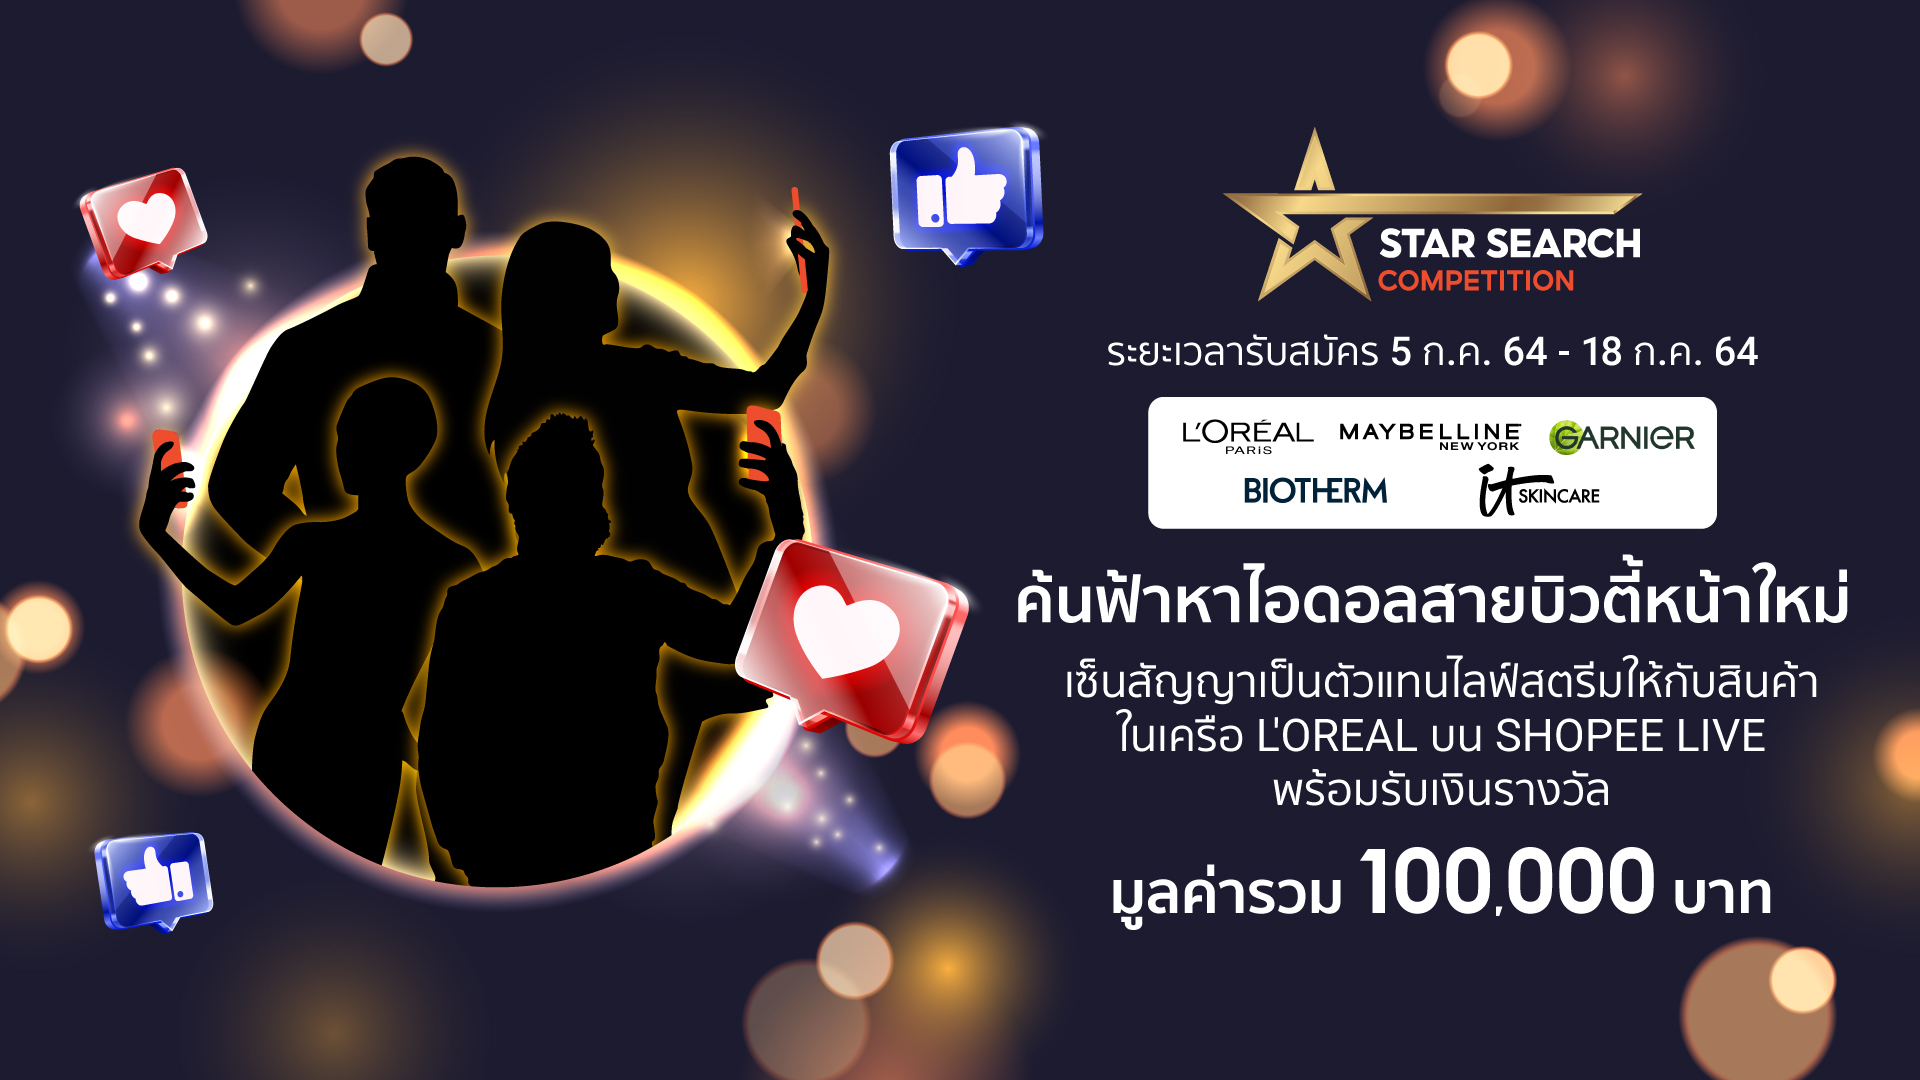 ‘ช้อปปี้’ จับมือ ‘ลอรีอัล ประเทศไทย’ จัด 'Star Search Competition'